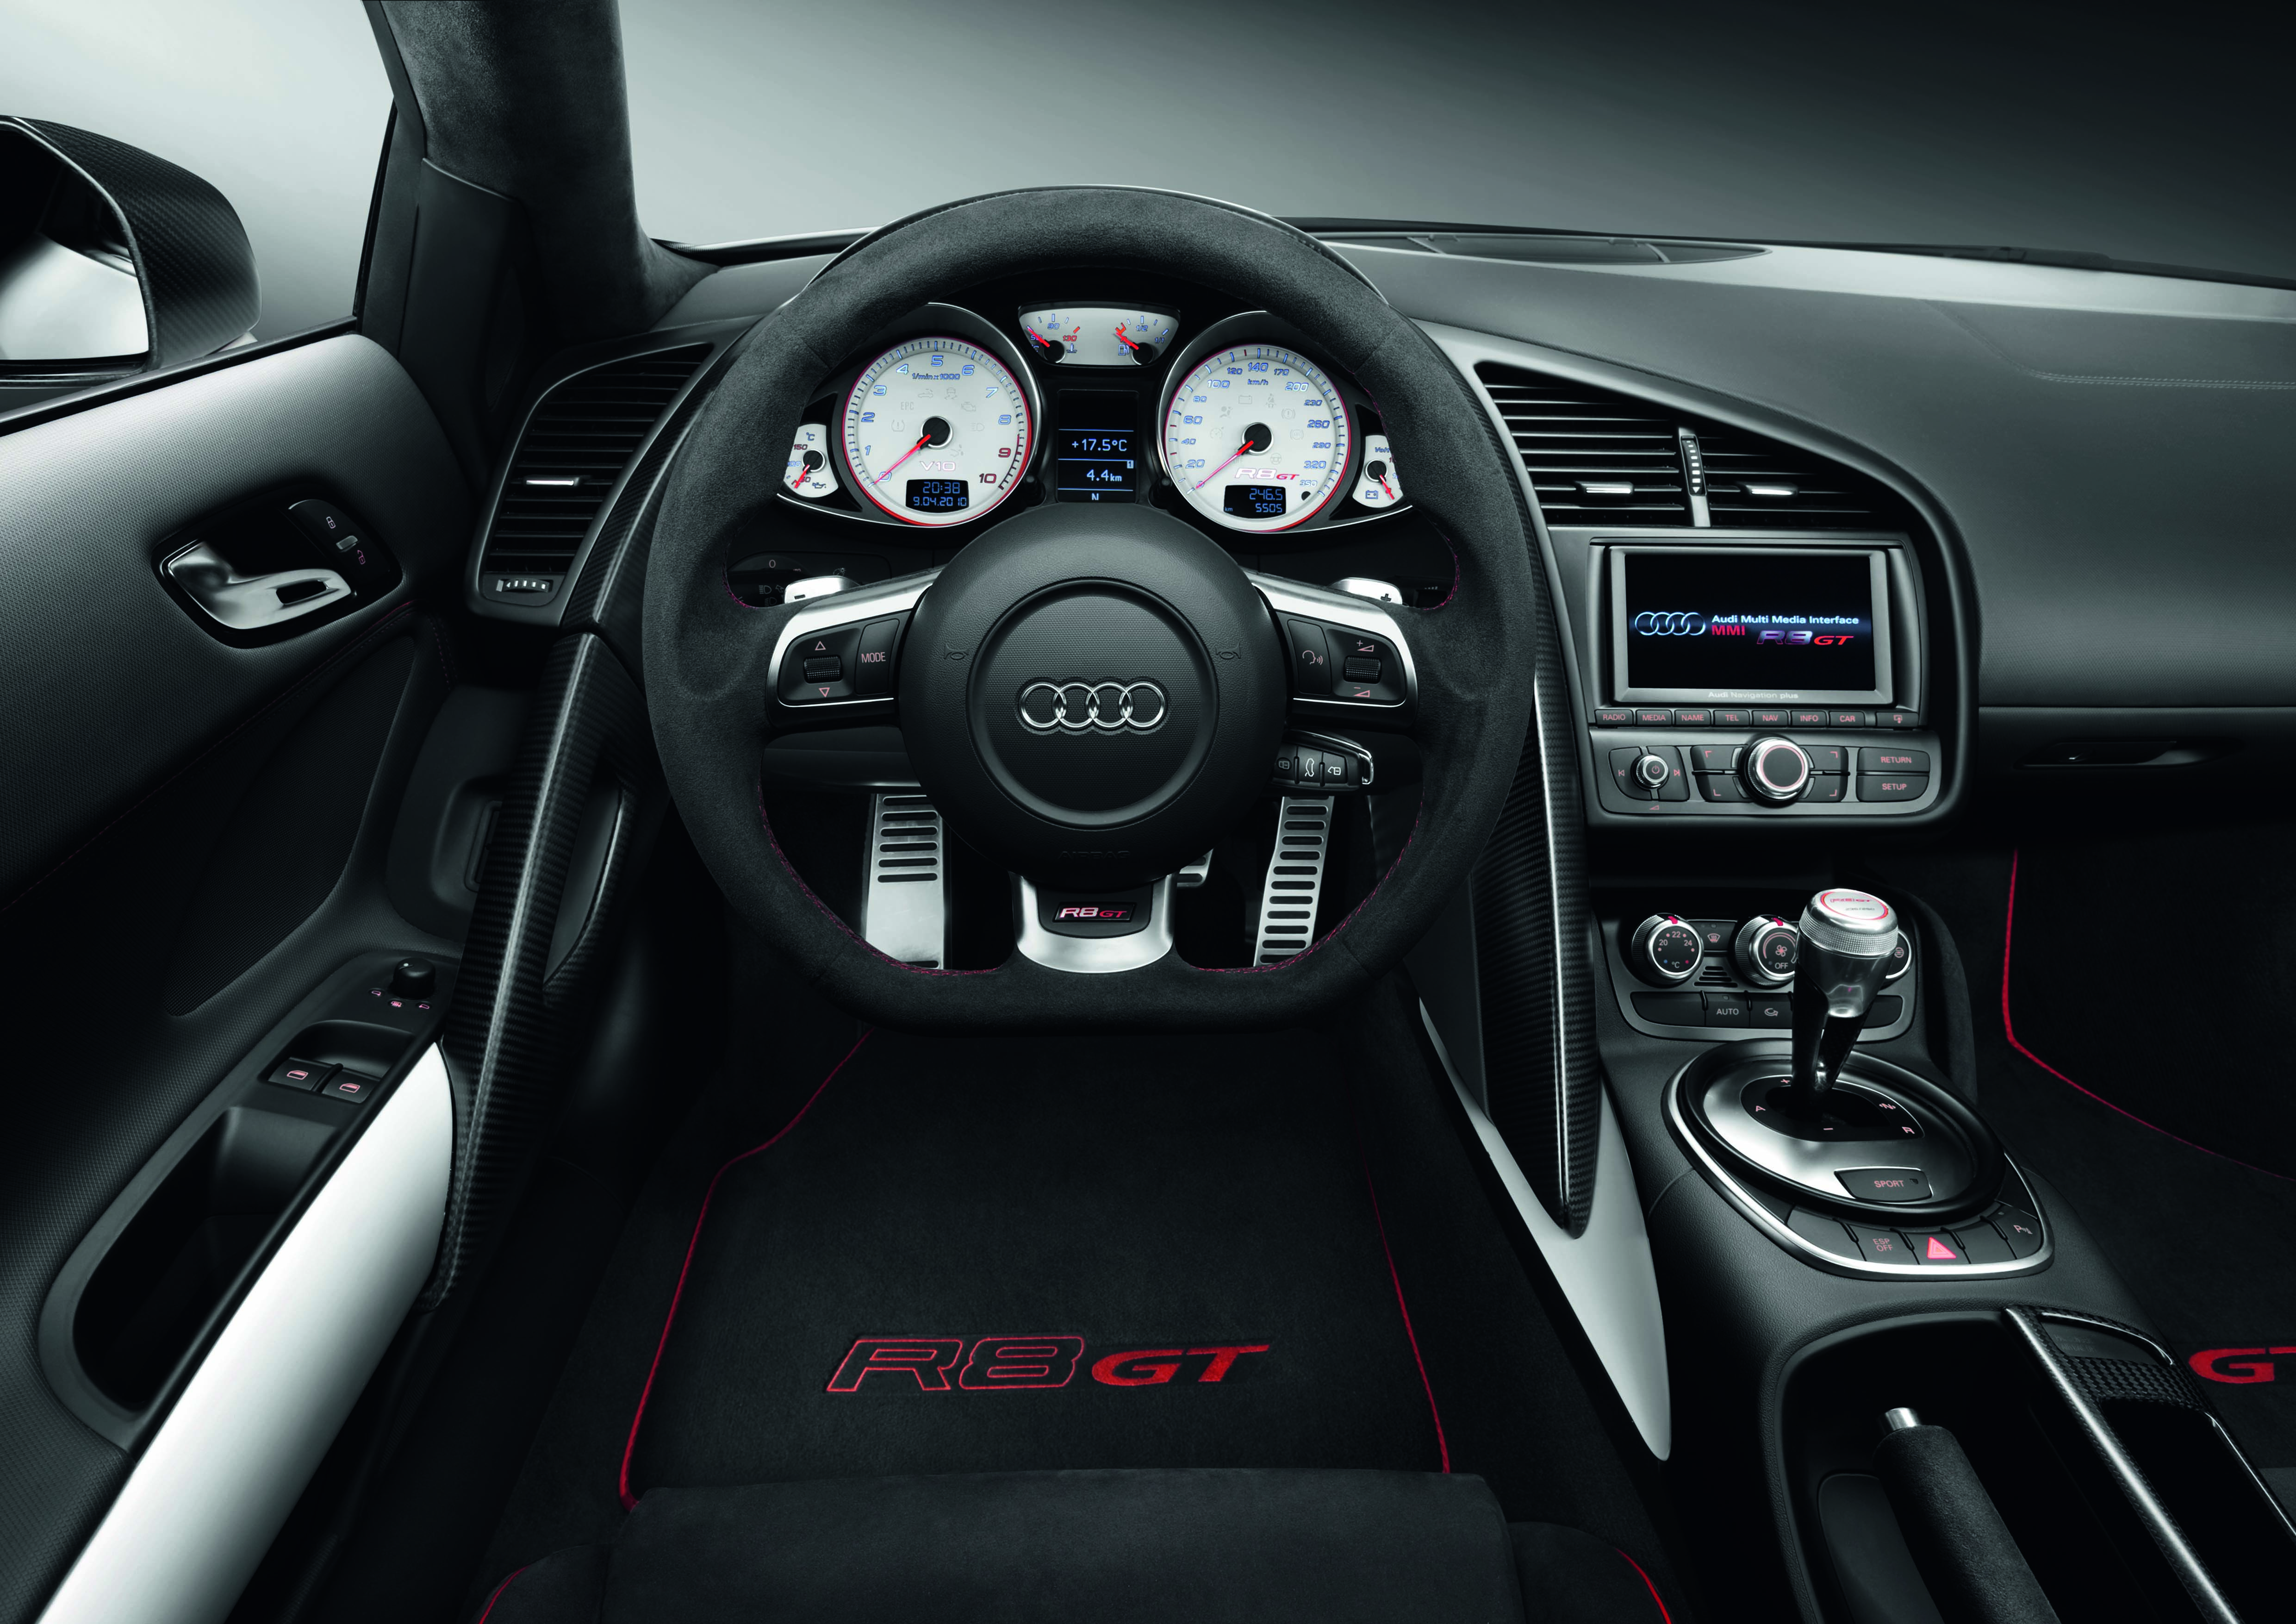 Купить ауди на механике. "Audi" "r8" "2007" gt. Audi r8 gt салон. Audi r8 Coupe v10 салон. Audi r8 gt 2012.